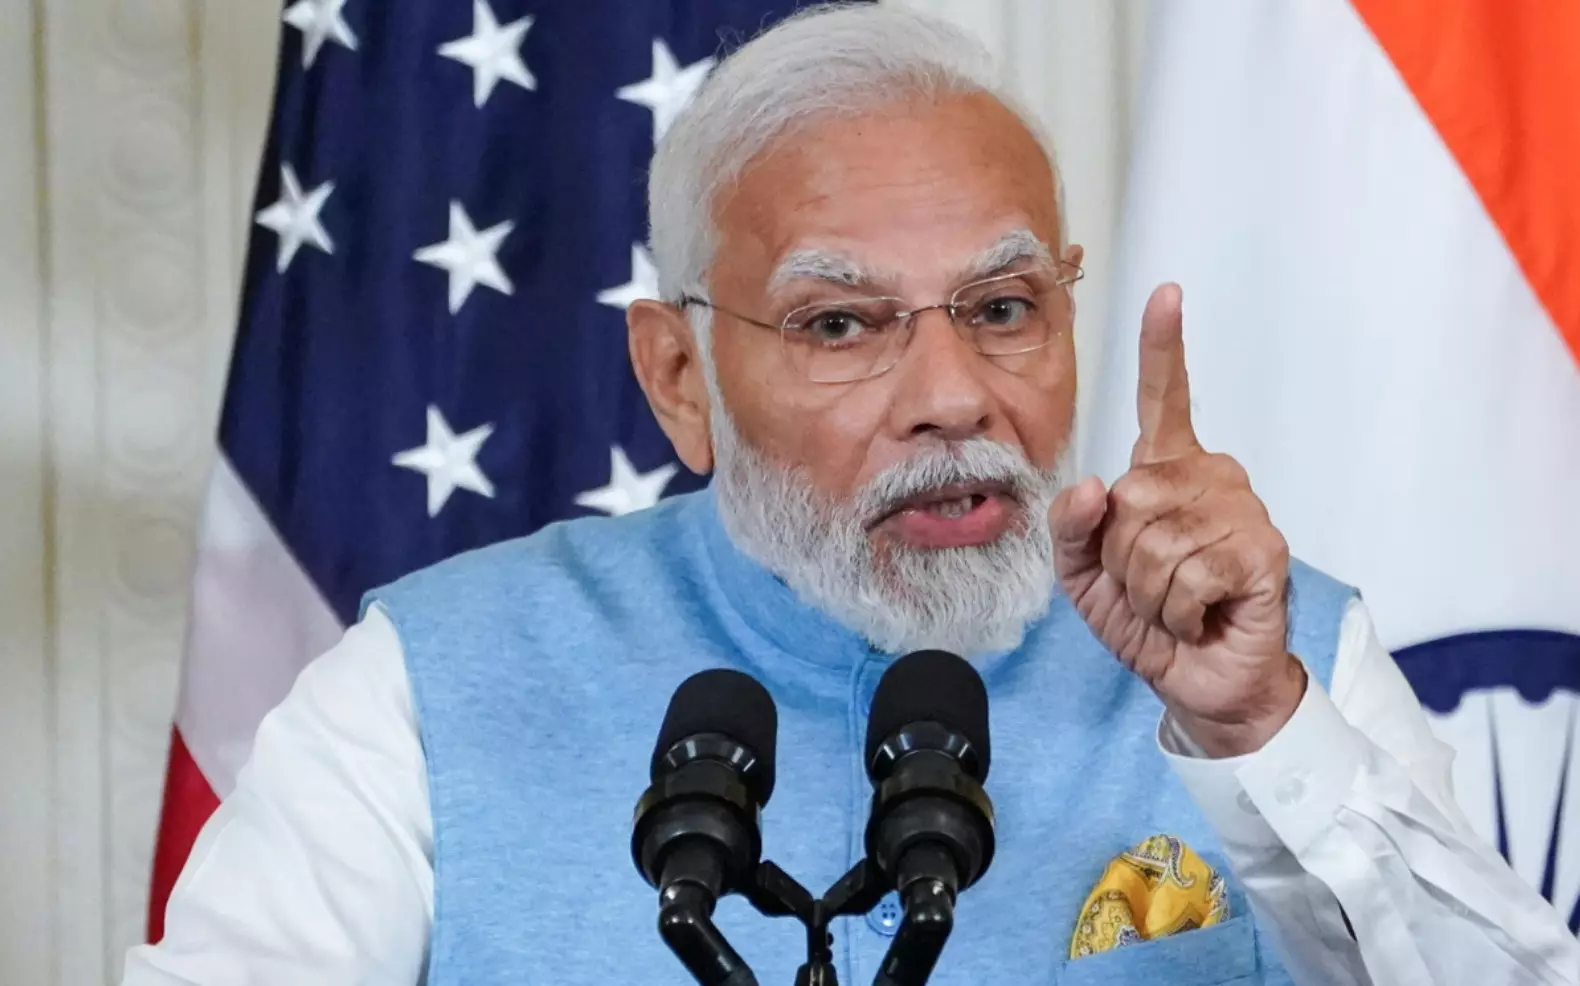 PM Modi US Visit : जब प्रेस कॉन्फ्रेंस में पत्रकार ने उठाया अल्पसंख्यकों से जुड़ा सवाल, तो पीएम मोदी ने दिया ये जवाब